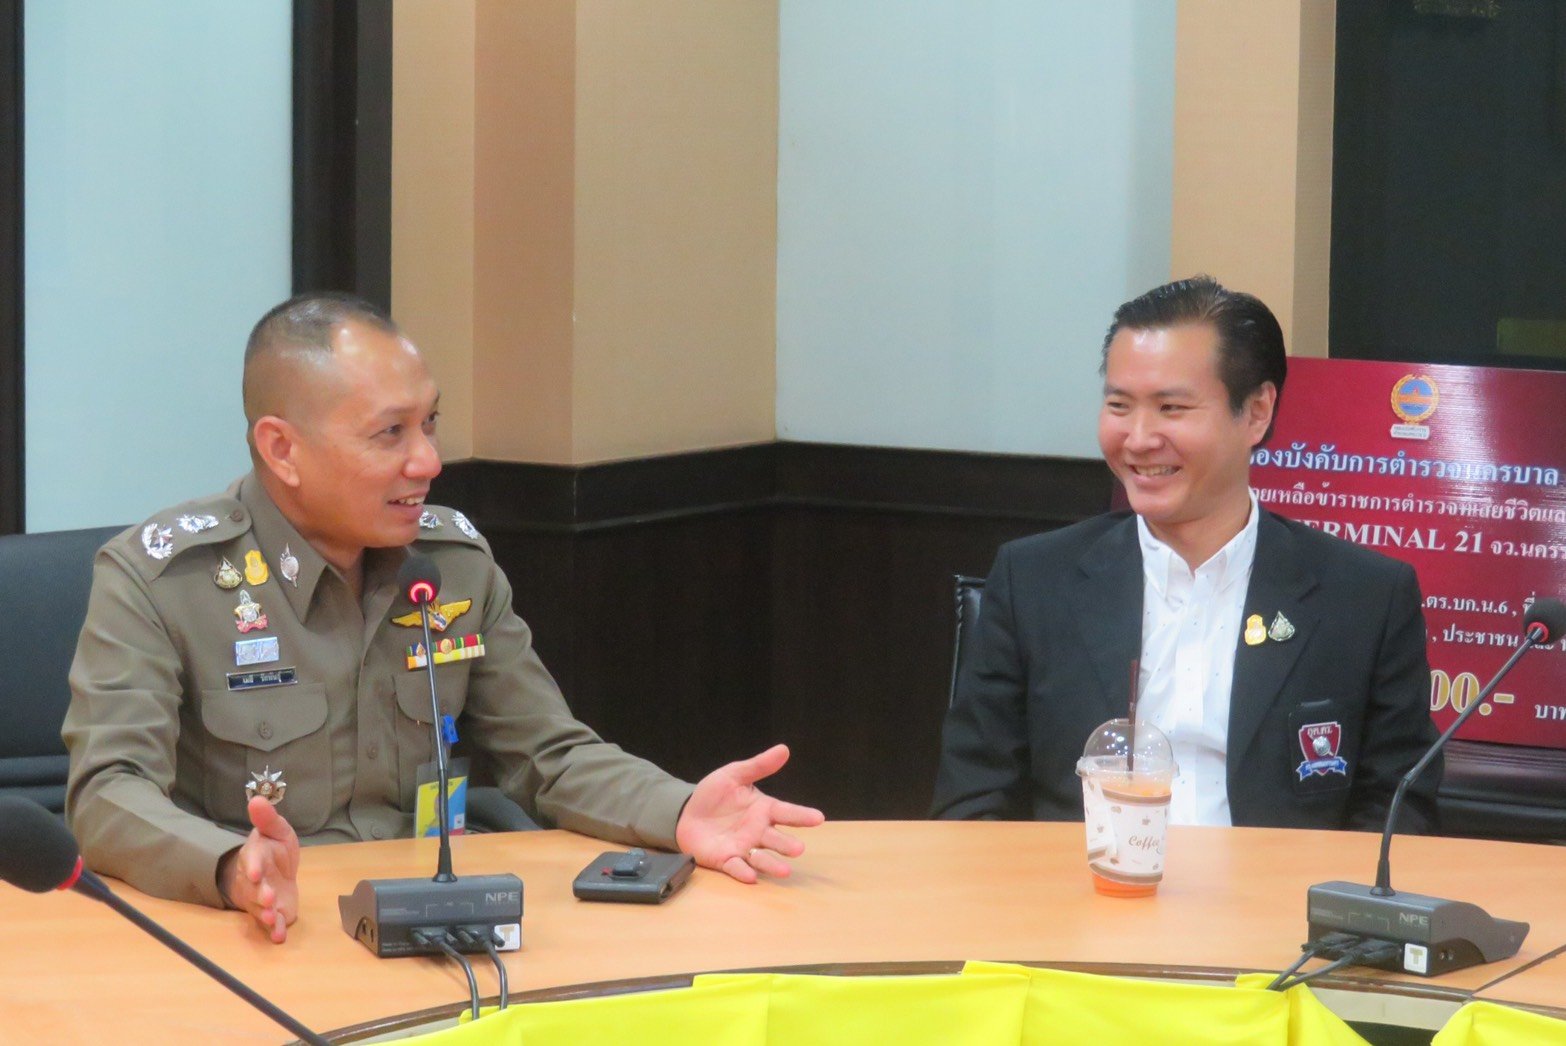 ท่านพล.ต.ท.ภัคพงศ์ พงษ์เภตรา ผู้บัญชาการตำรวจนครบาล เป็นประธานในพิธีมอบเงินช่วยเหลือข้าราชการตำรวจกองกำกับการต่อต้านการก่อการร้าย (อรินทราช26)  โดยมี ท่านพล.ต.ต.ดร.ปิยะ ต๊ะวิชัย รองผู้บัญชาการตำรวจนครบาล , ท่านพล.ต.ต.จิรพัฒน์ ภูมิจิตร รองผู้บัญชาการตำรวจน